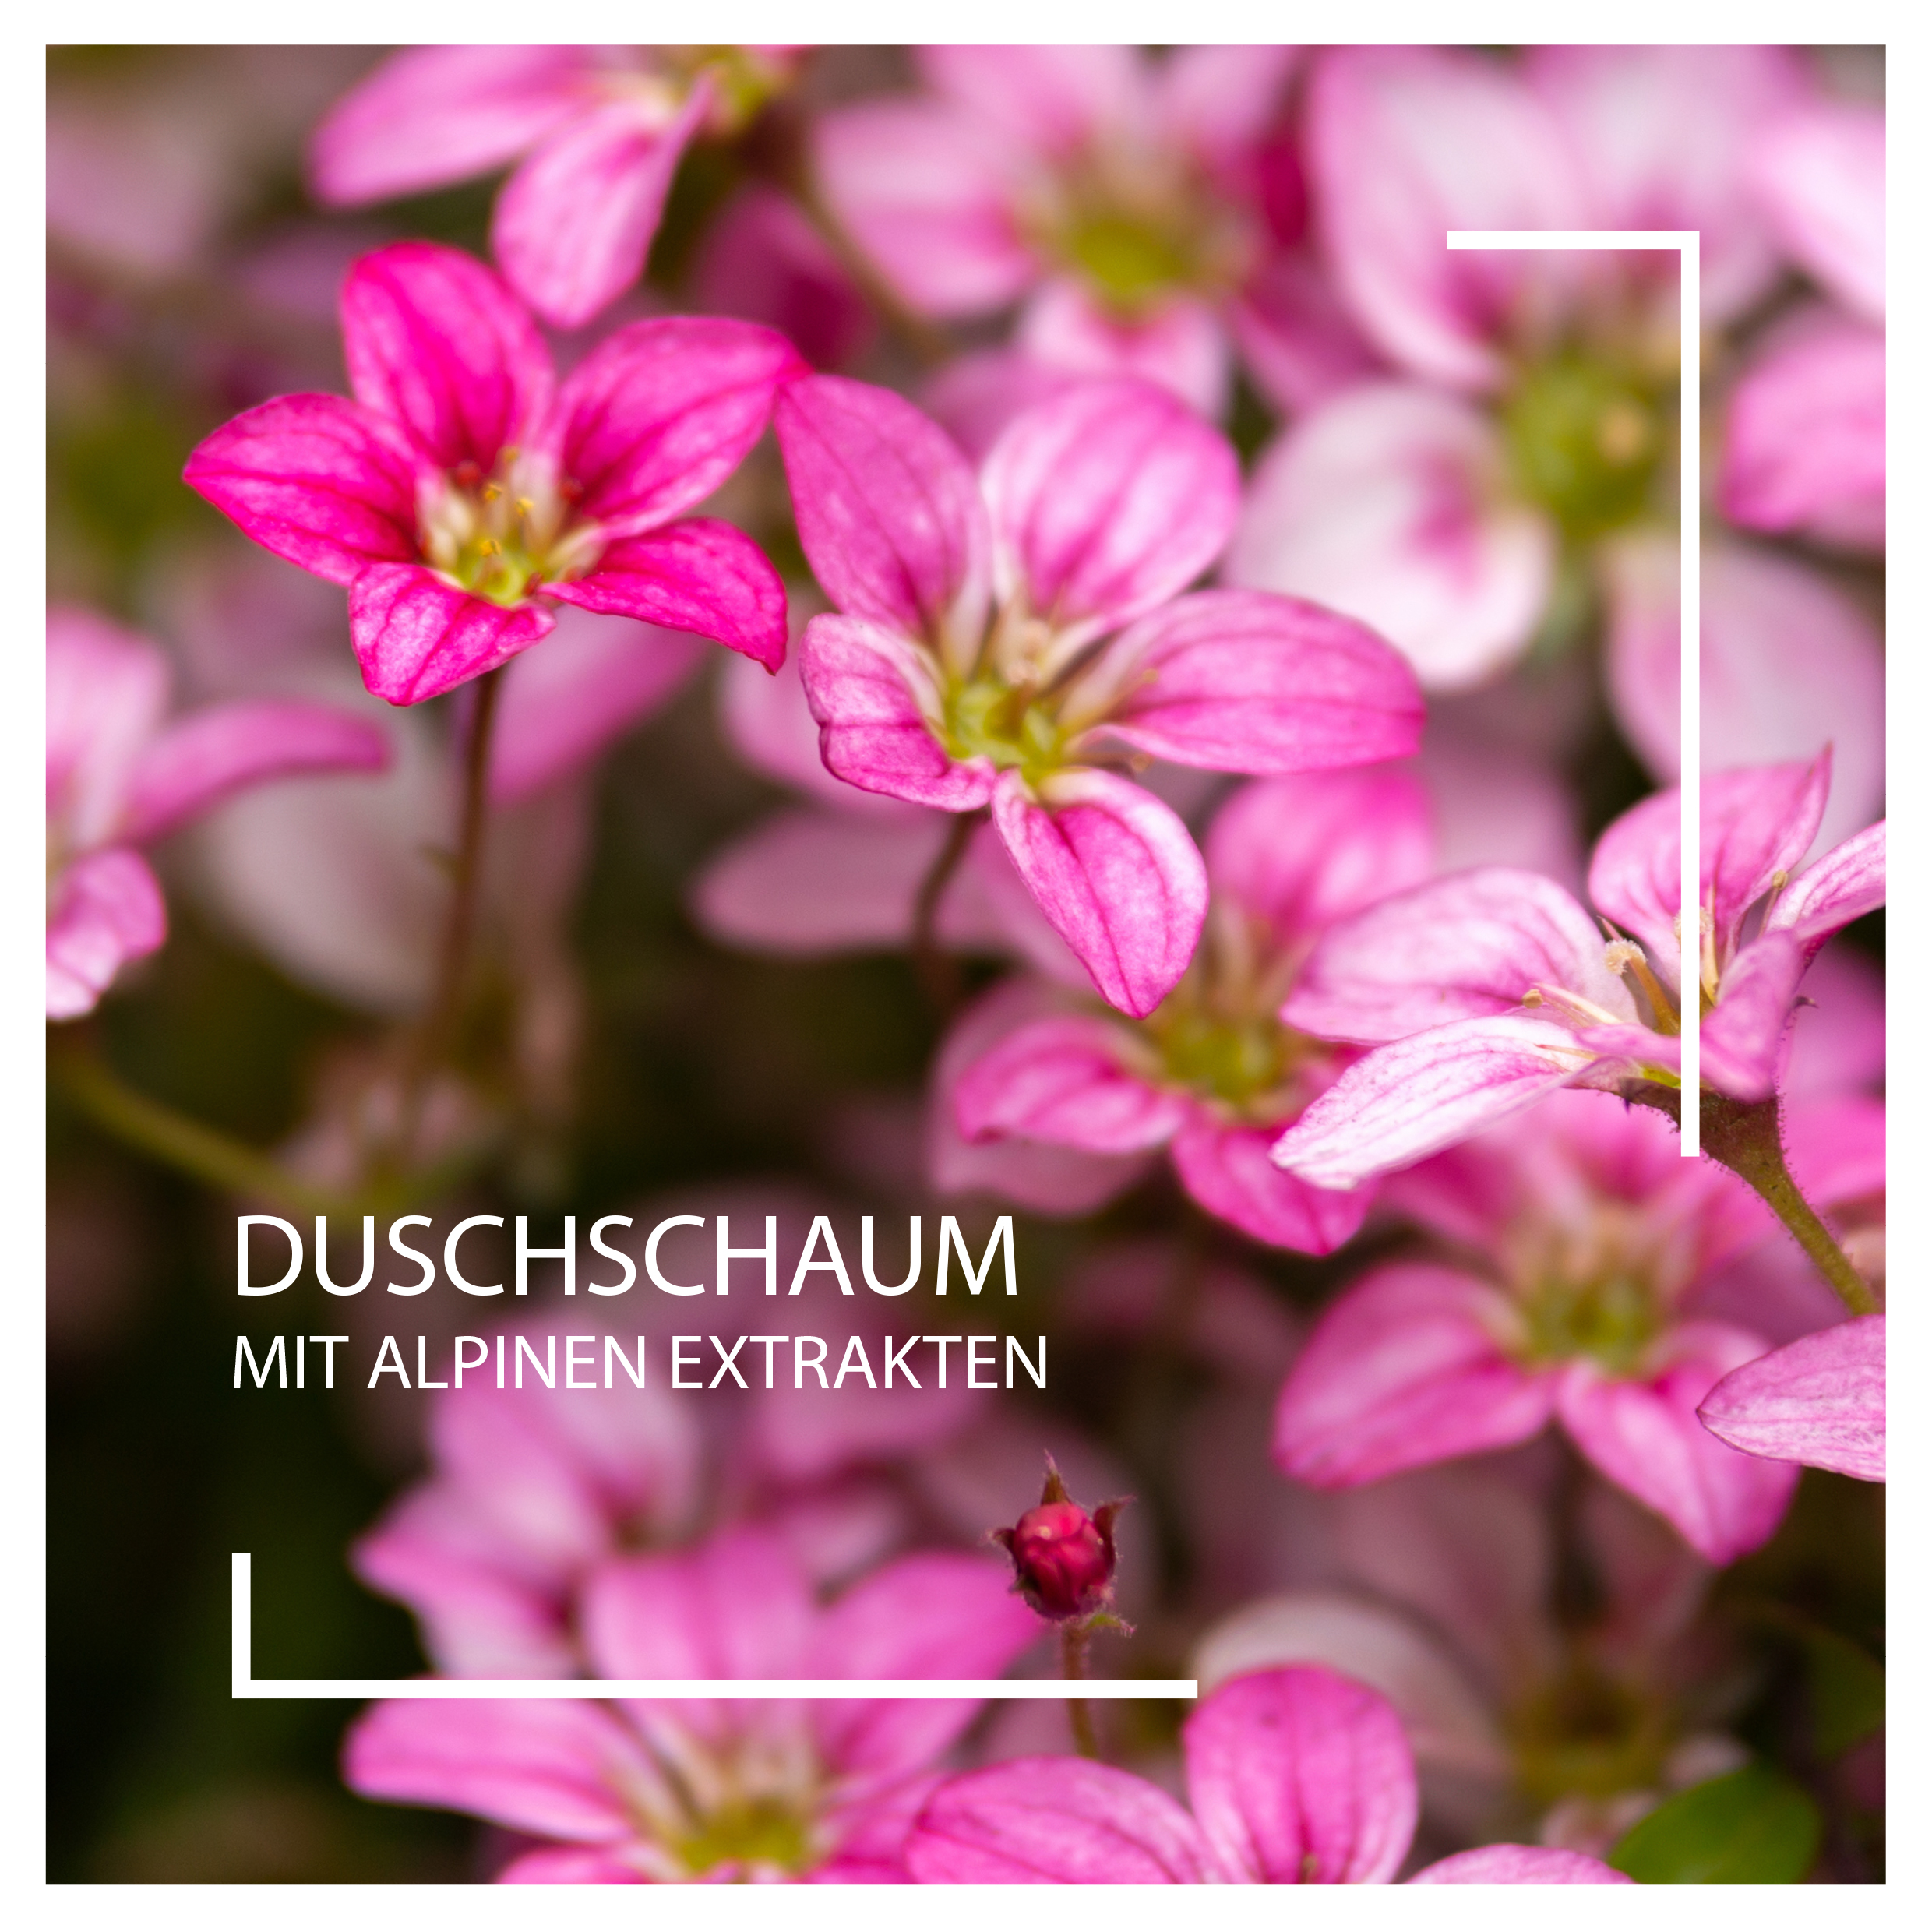 Duschschaum mit alpinen Extrakten I BeautyspaI Foto: shutterstock.com/Max_555